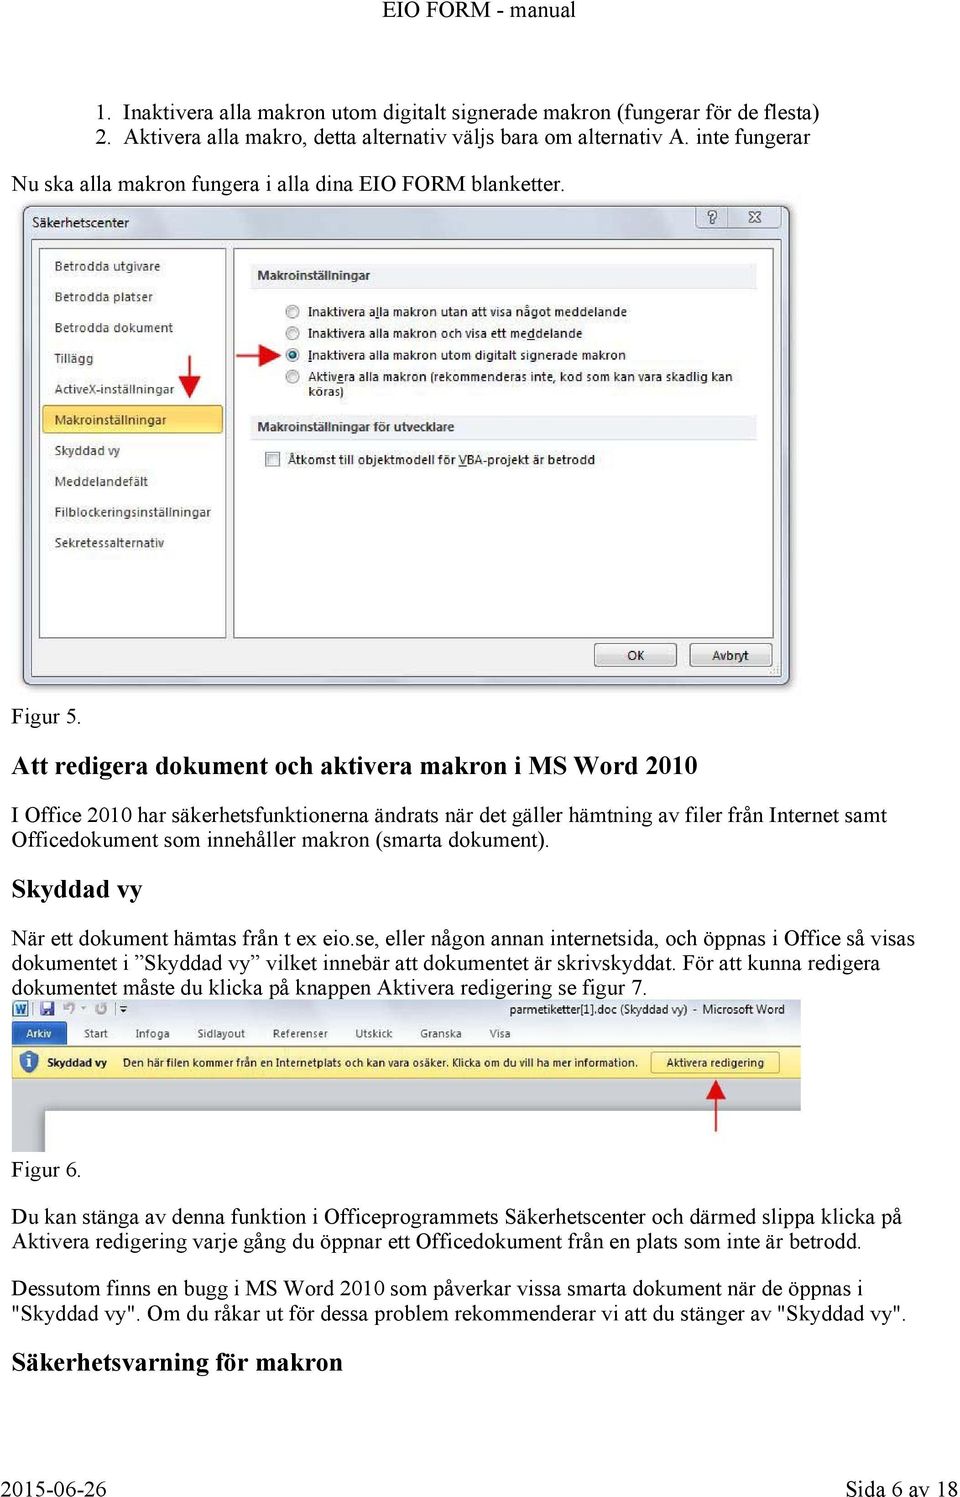 Att redigera dokument och aktivera makron i MS Word 2010 I Office 2010 har säkerhetsfunktionerna ändrats när det gäller hämtning av filer från Internet samt Officedokument som innehåller makron